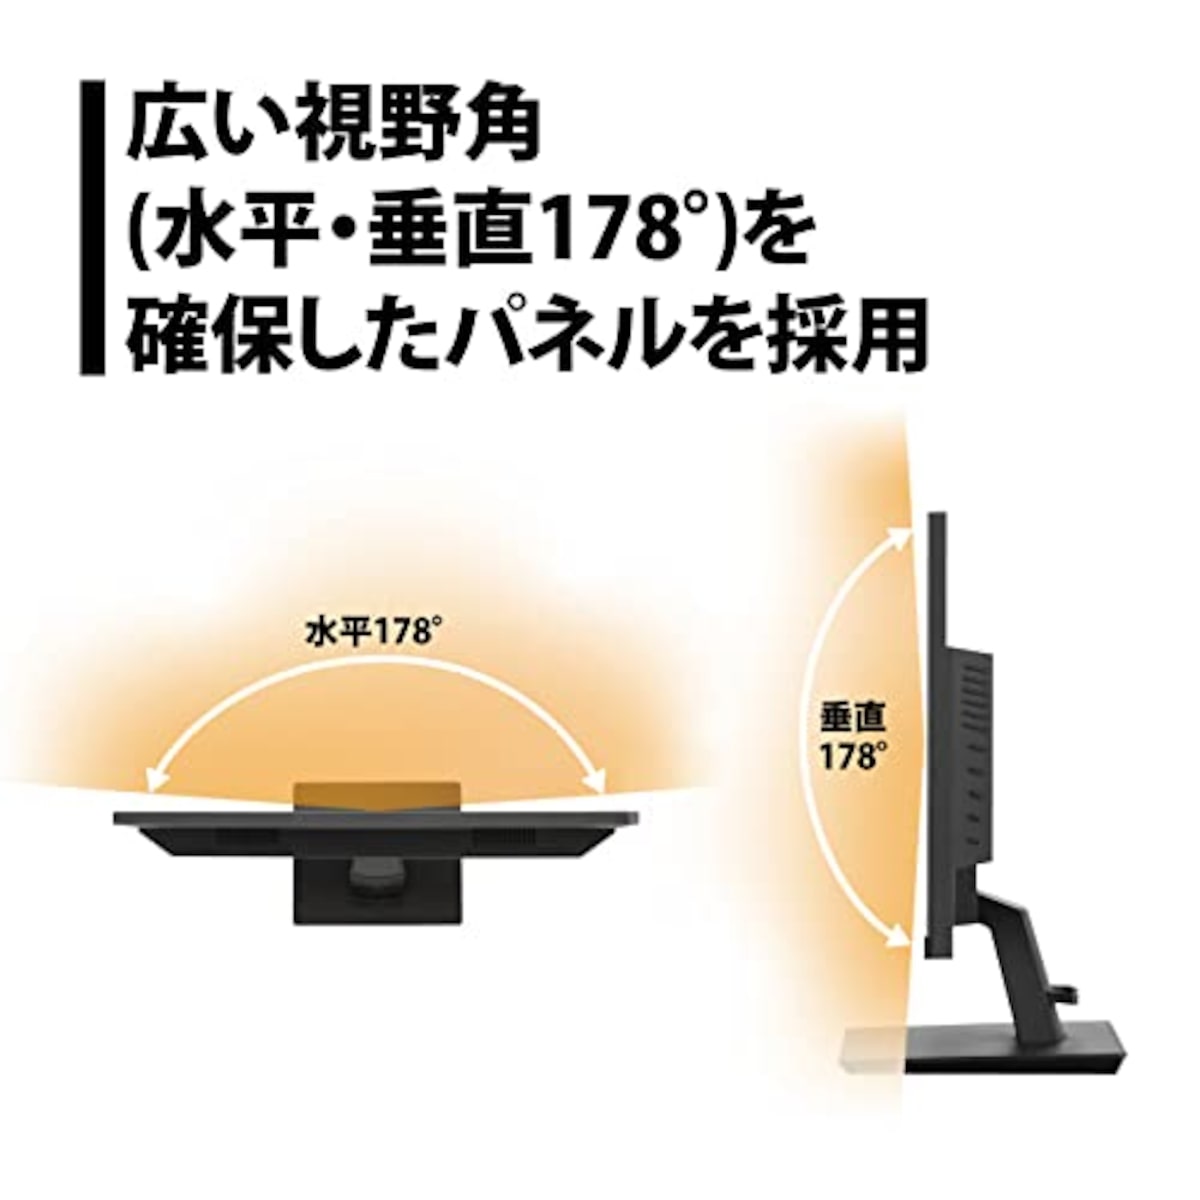  プリンストン モニター 21.5型 (フルHD 1920×1080/HDMI･VGA･DVI･DisplayPort端子各1/ブルーライト･ちらつき軽減/広視野角/スピーカー内蔵) ブラック PTFBFH-22W画像3 